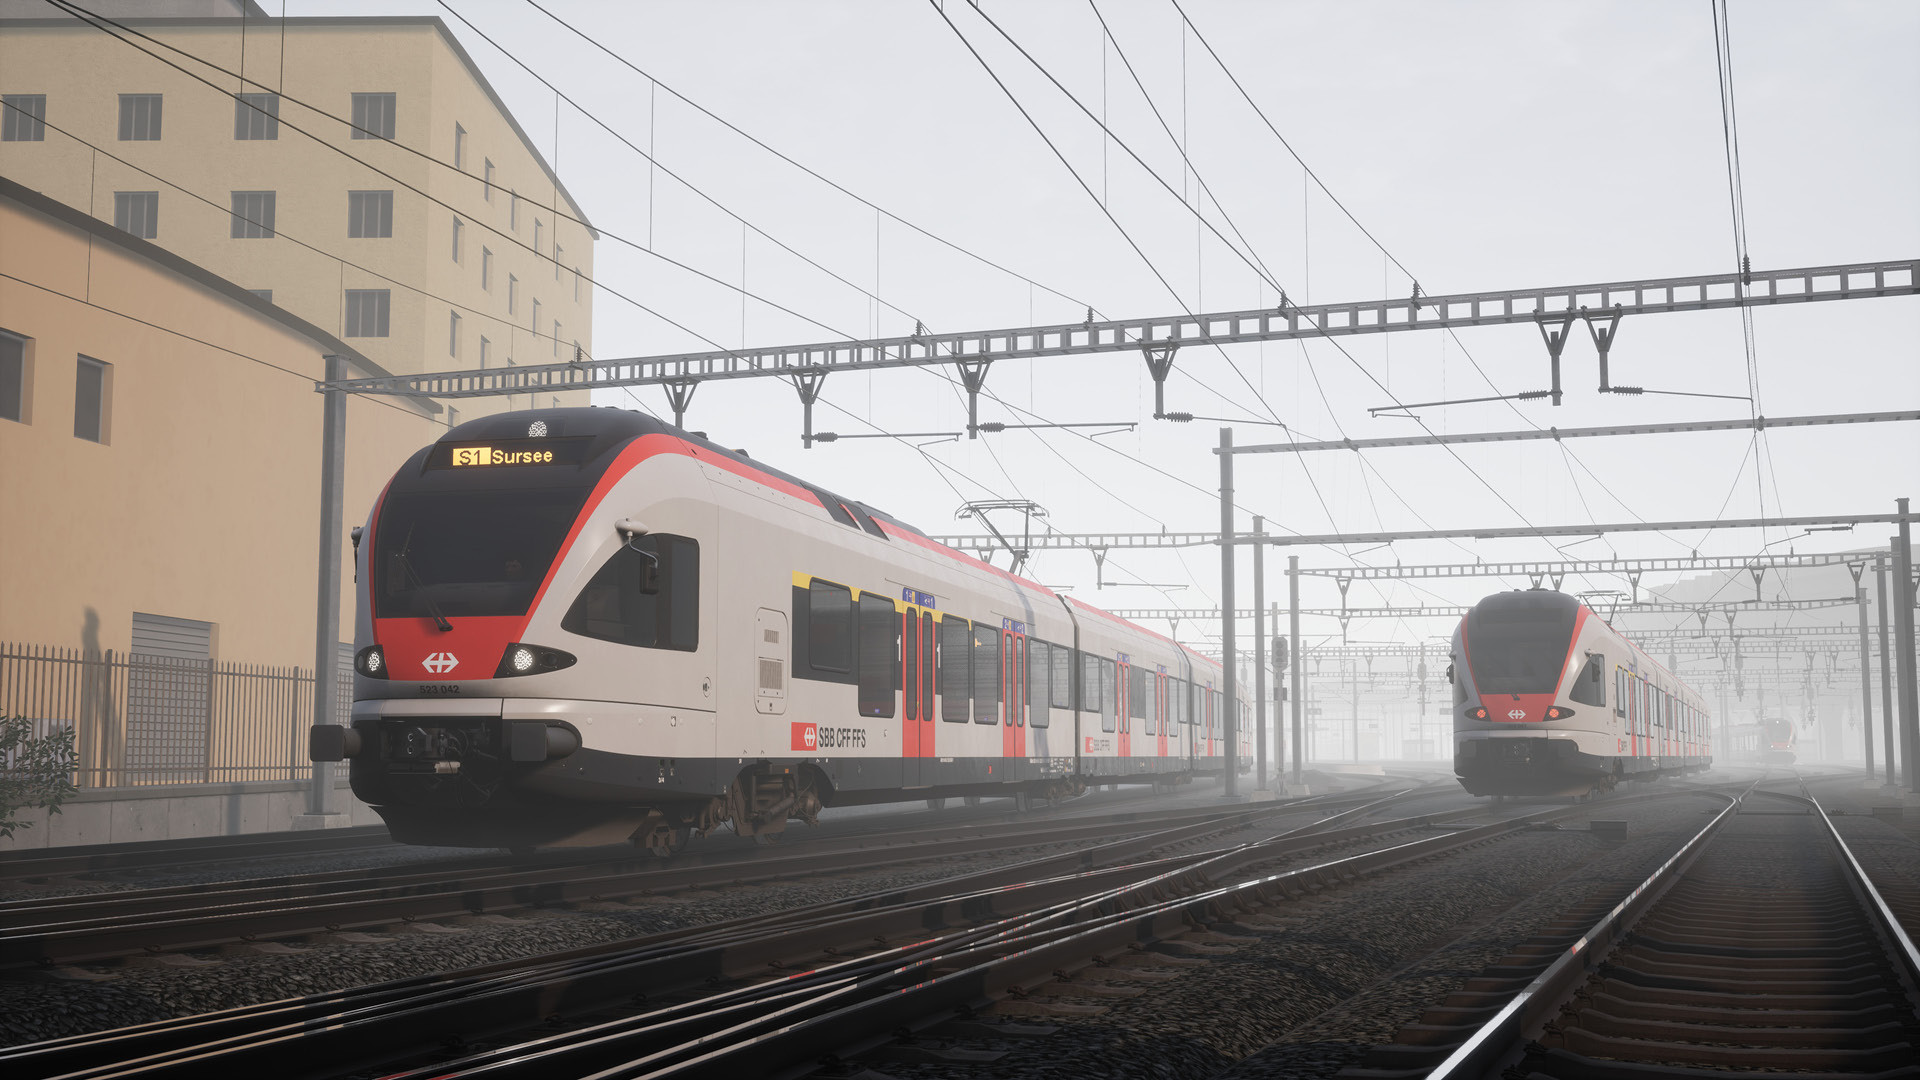 RVG] S-Bahn Zentralschweiz: Luzern - Sursee Route Add-On erhältlich! -   - Die Train Simulator Community